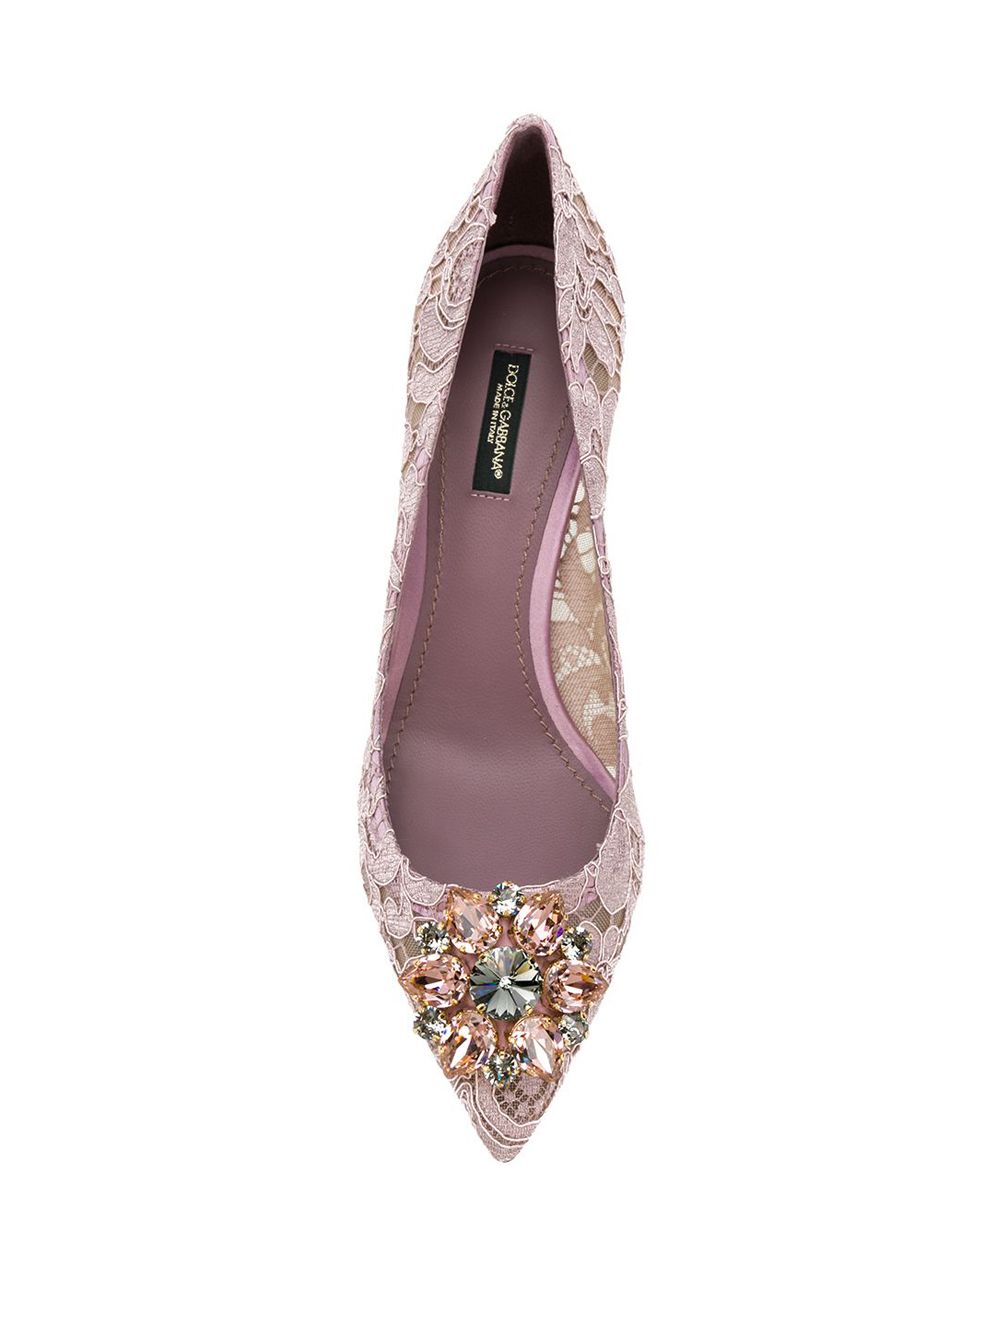 фото Dolce & Gabbana кружевные туфли-лодочки Bellucci